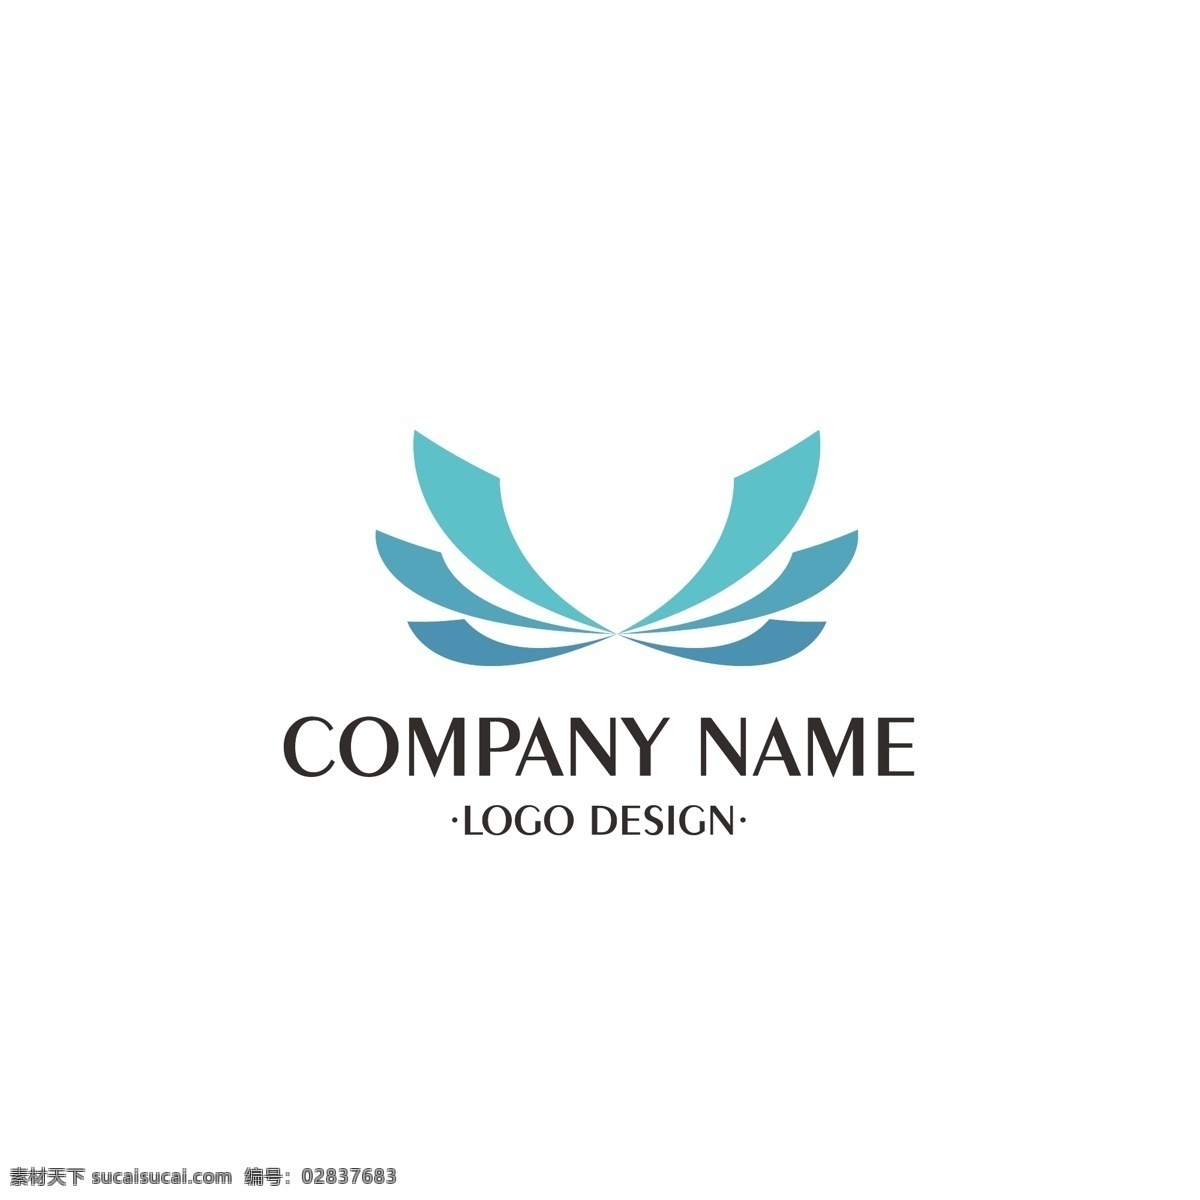 企业 标志 logo 翅膀 渐变 对称 简约 公司 商业